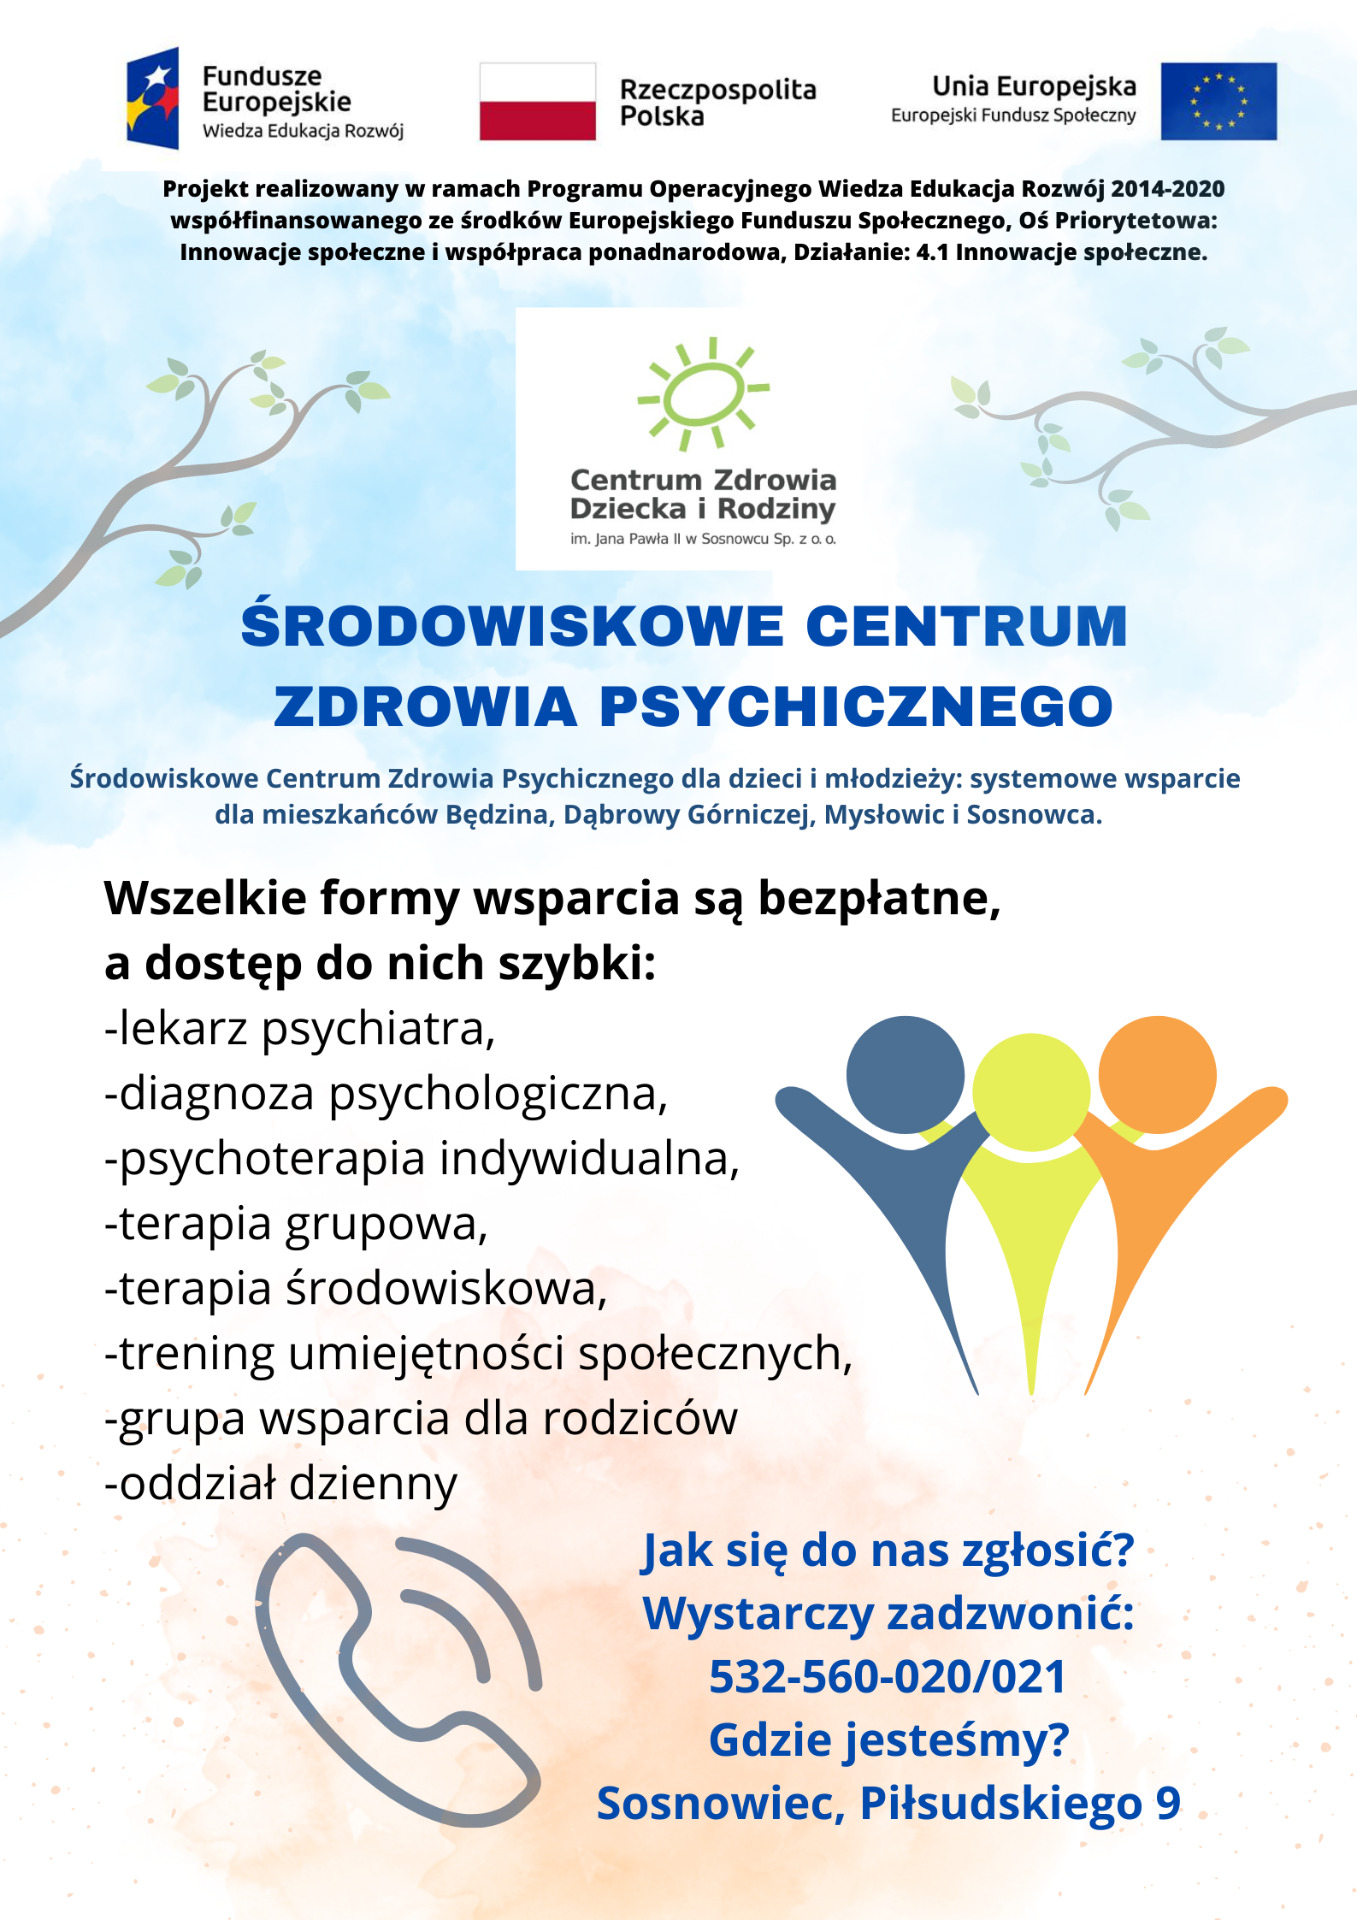 Środowiskowe Centrum Zdrowia Psychicznego w Sosnowcu - Obrazek 1